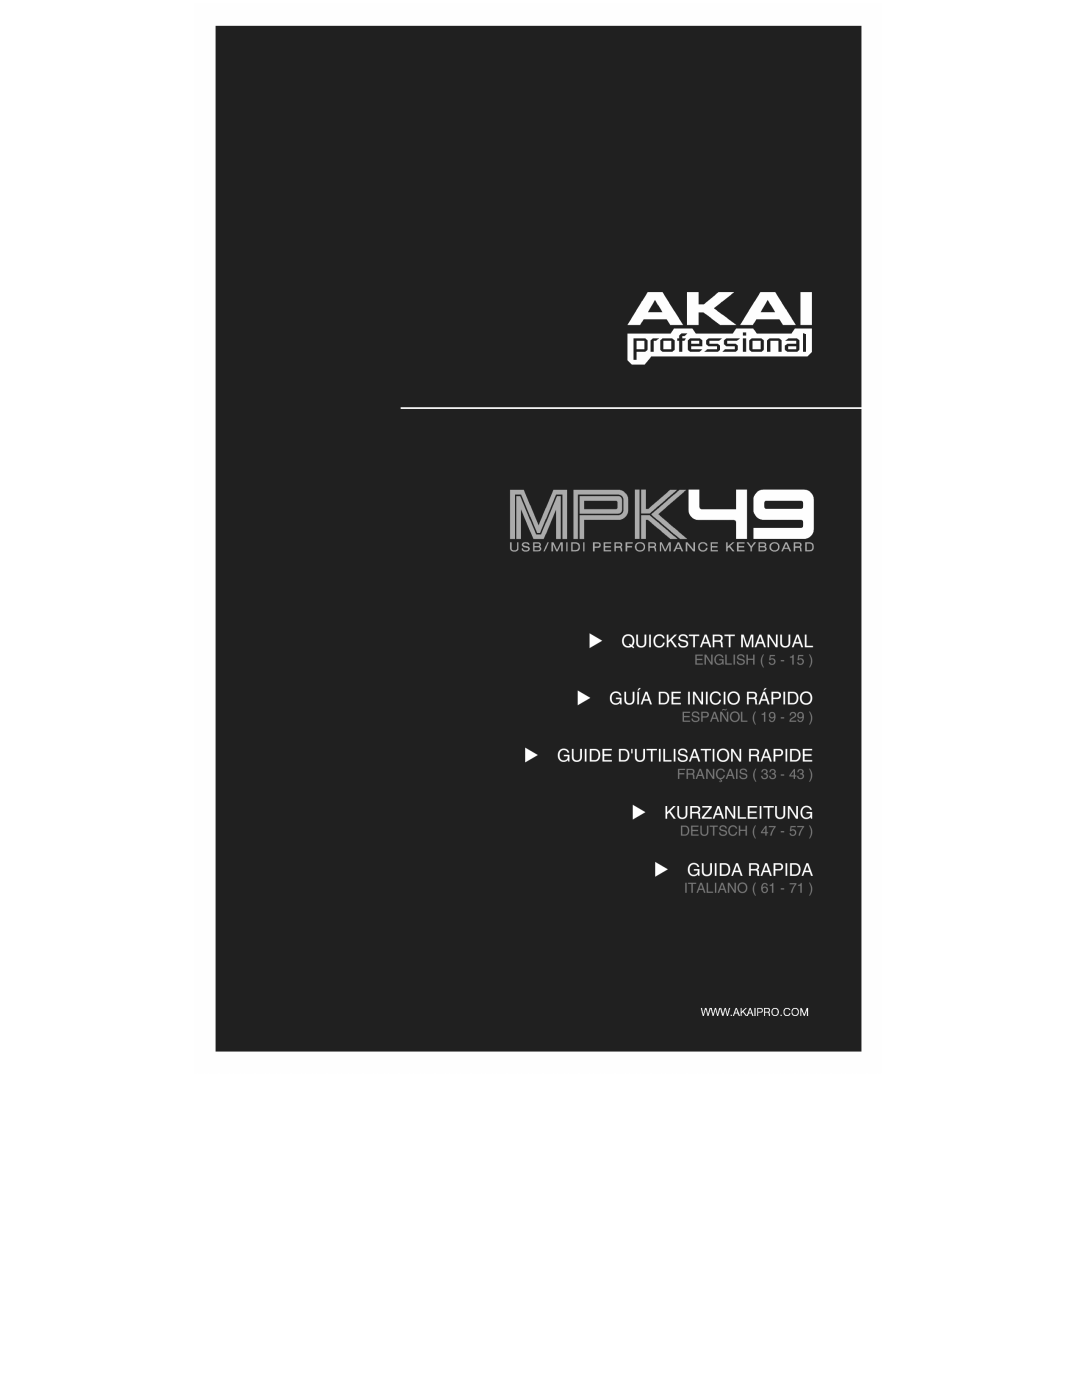 Akai MPK49 quick start manual Quickstart Manual, Guía De Inicio Rápido, Guide Dutilisation Rapide, Kurzanleitung 